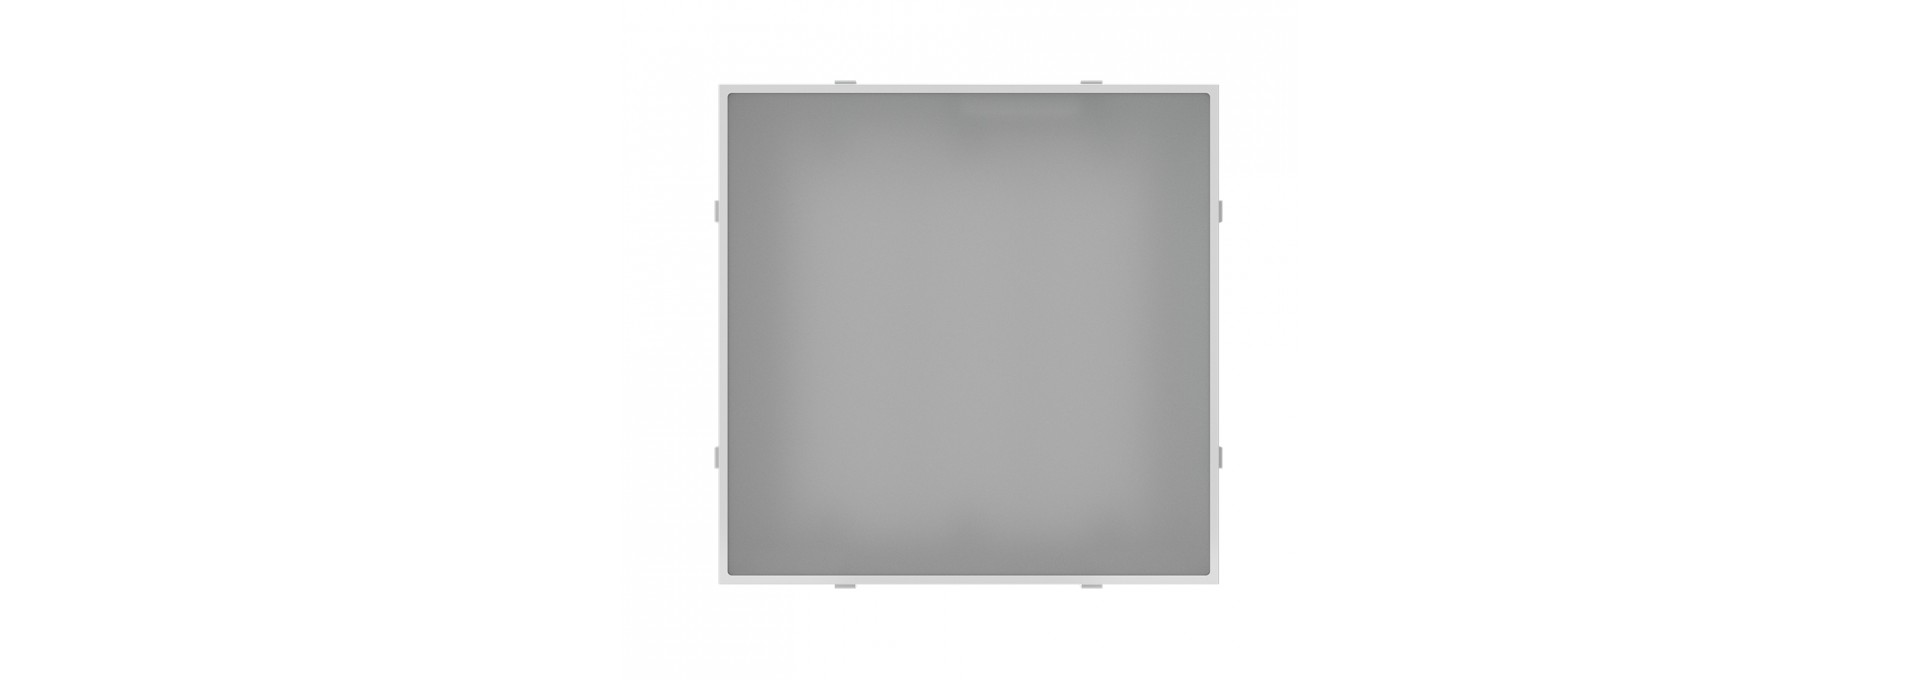 Исполнение корпуса светильника Грильято с матированным закаленным стеклом, степень защиты от пыли и влаги IP65